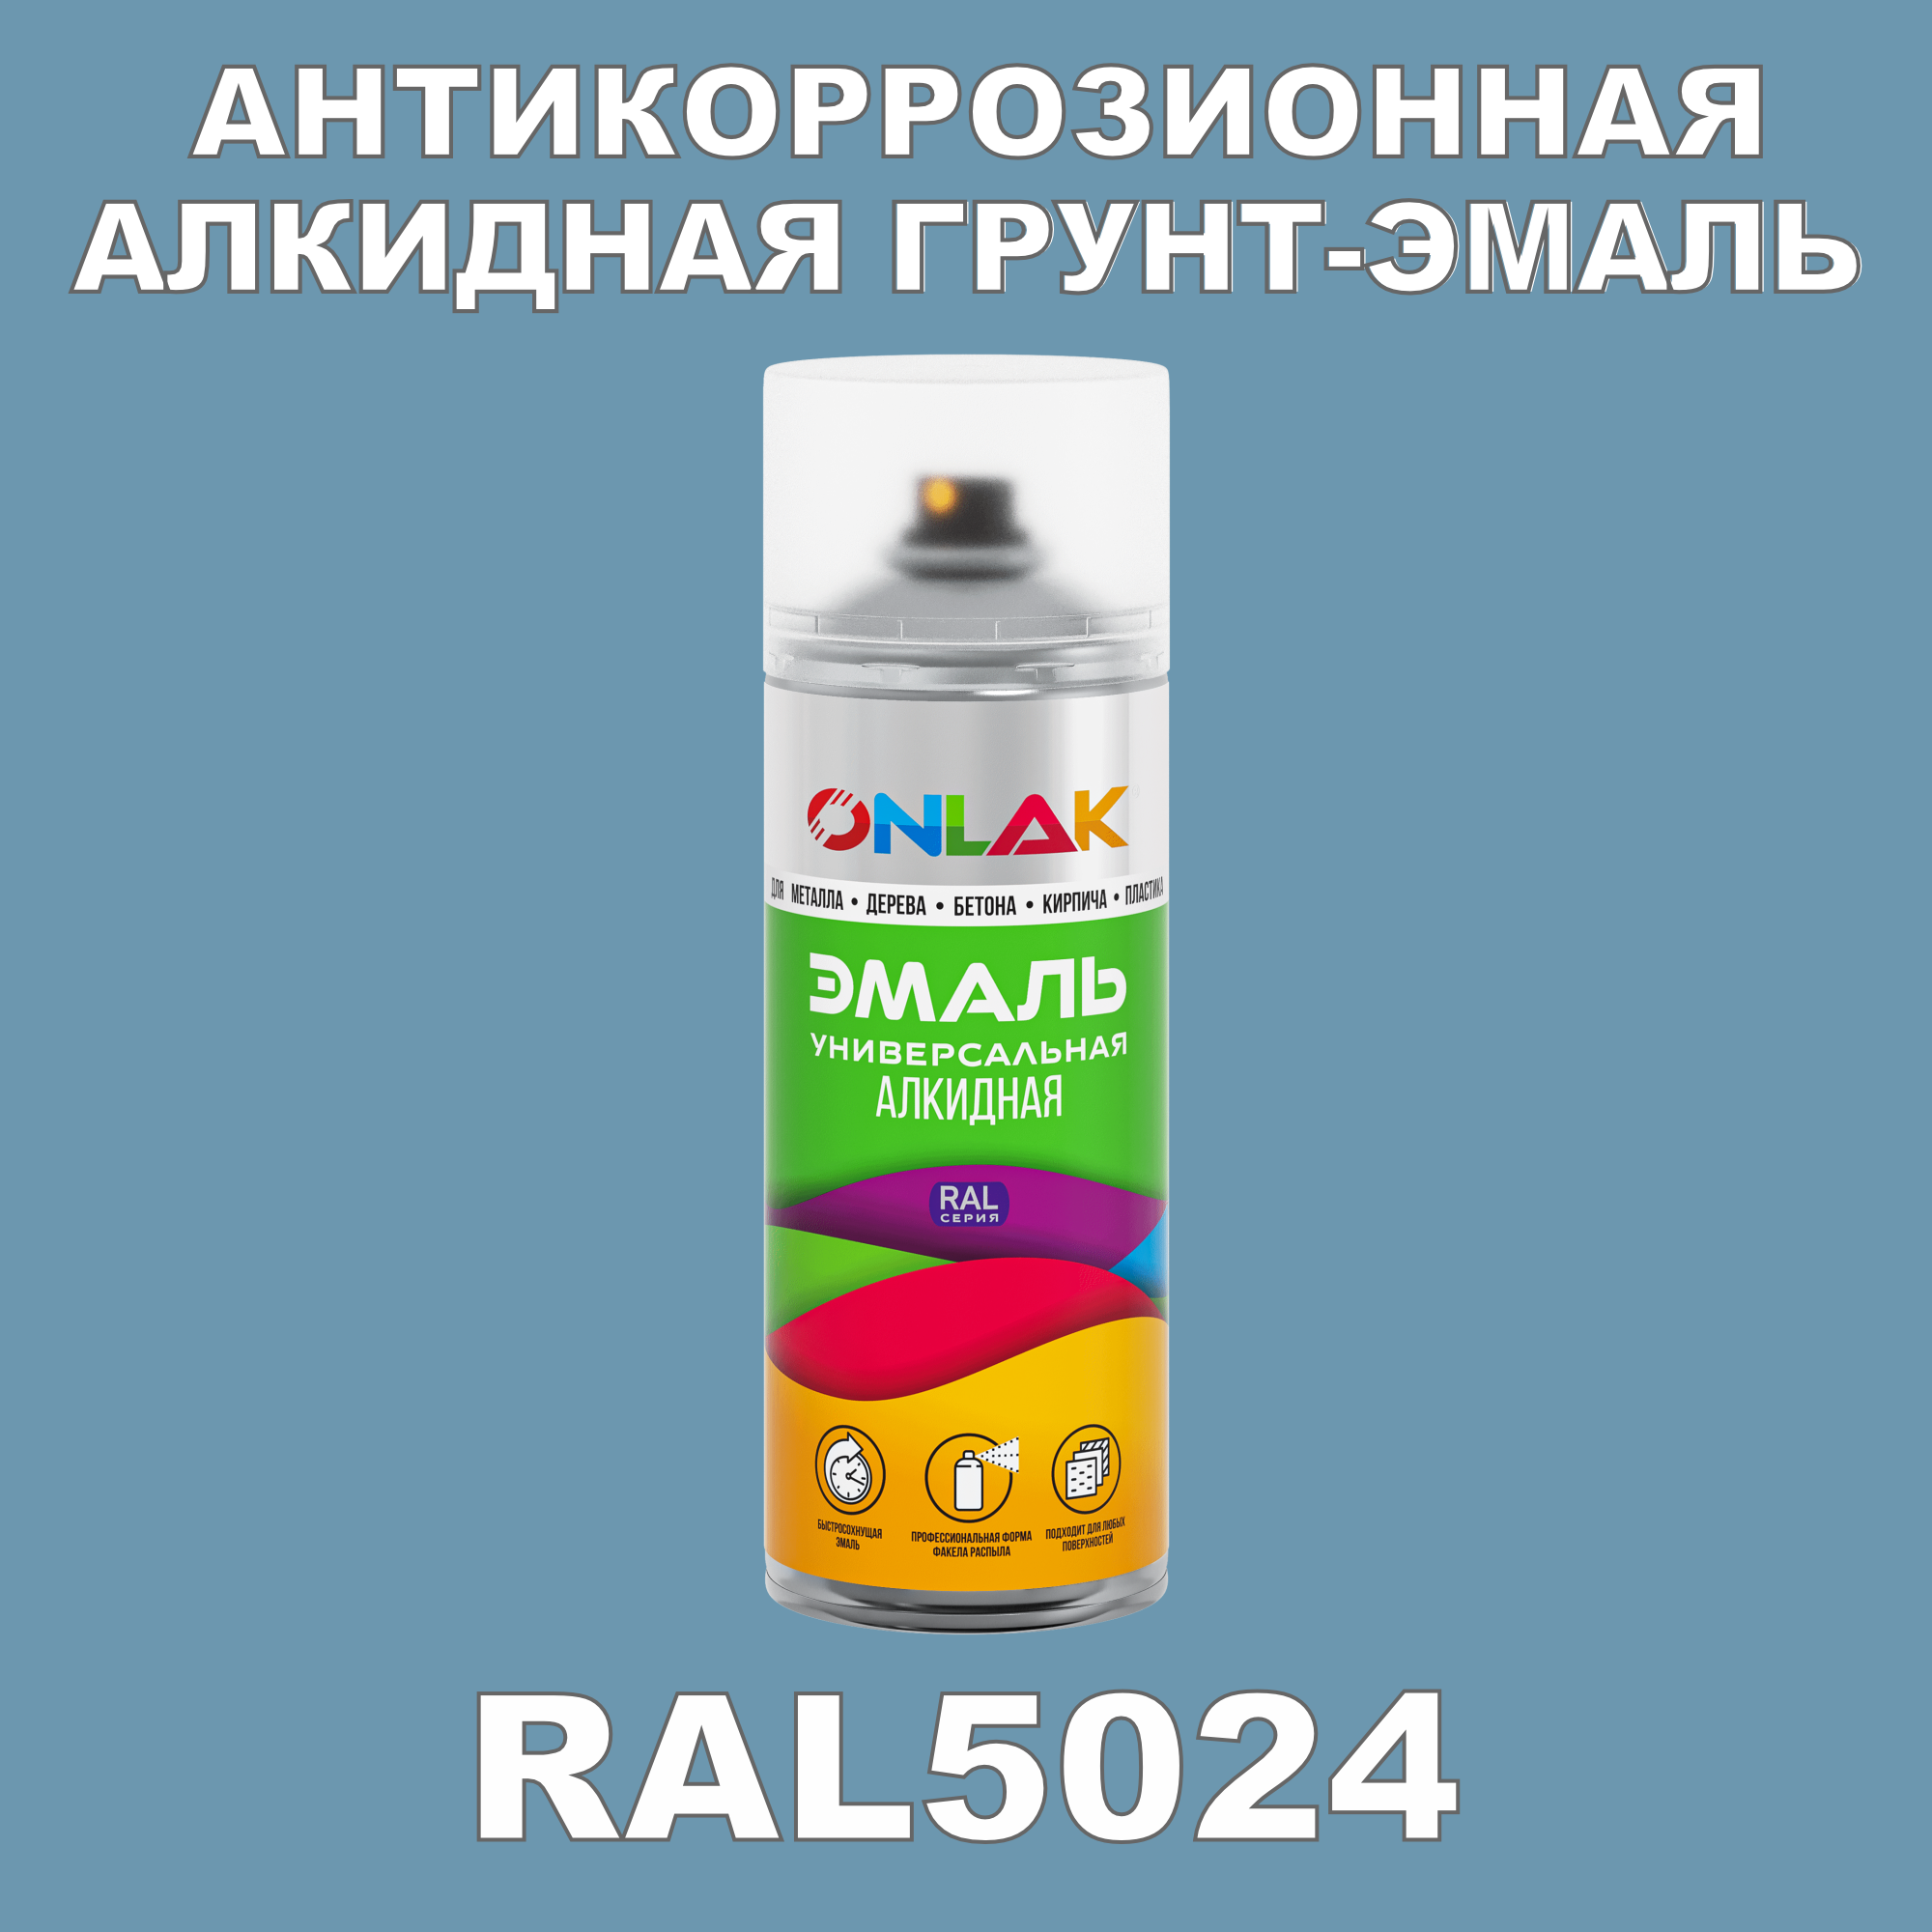 Антикоррозионная грунт-эмаль ONLAK RAL5024 полуматовая для металла и защиты от ржавчины антикоррозионная грунт эмаль onlak ral3004 полуматовая для металла и защиты от ржавчины